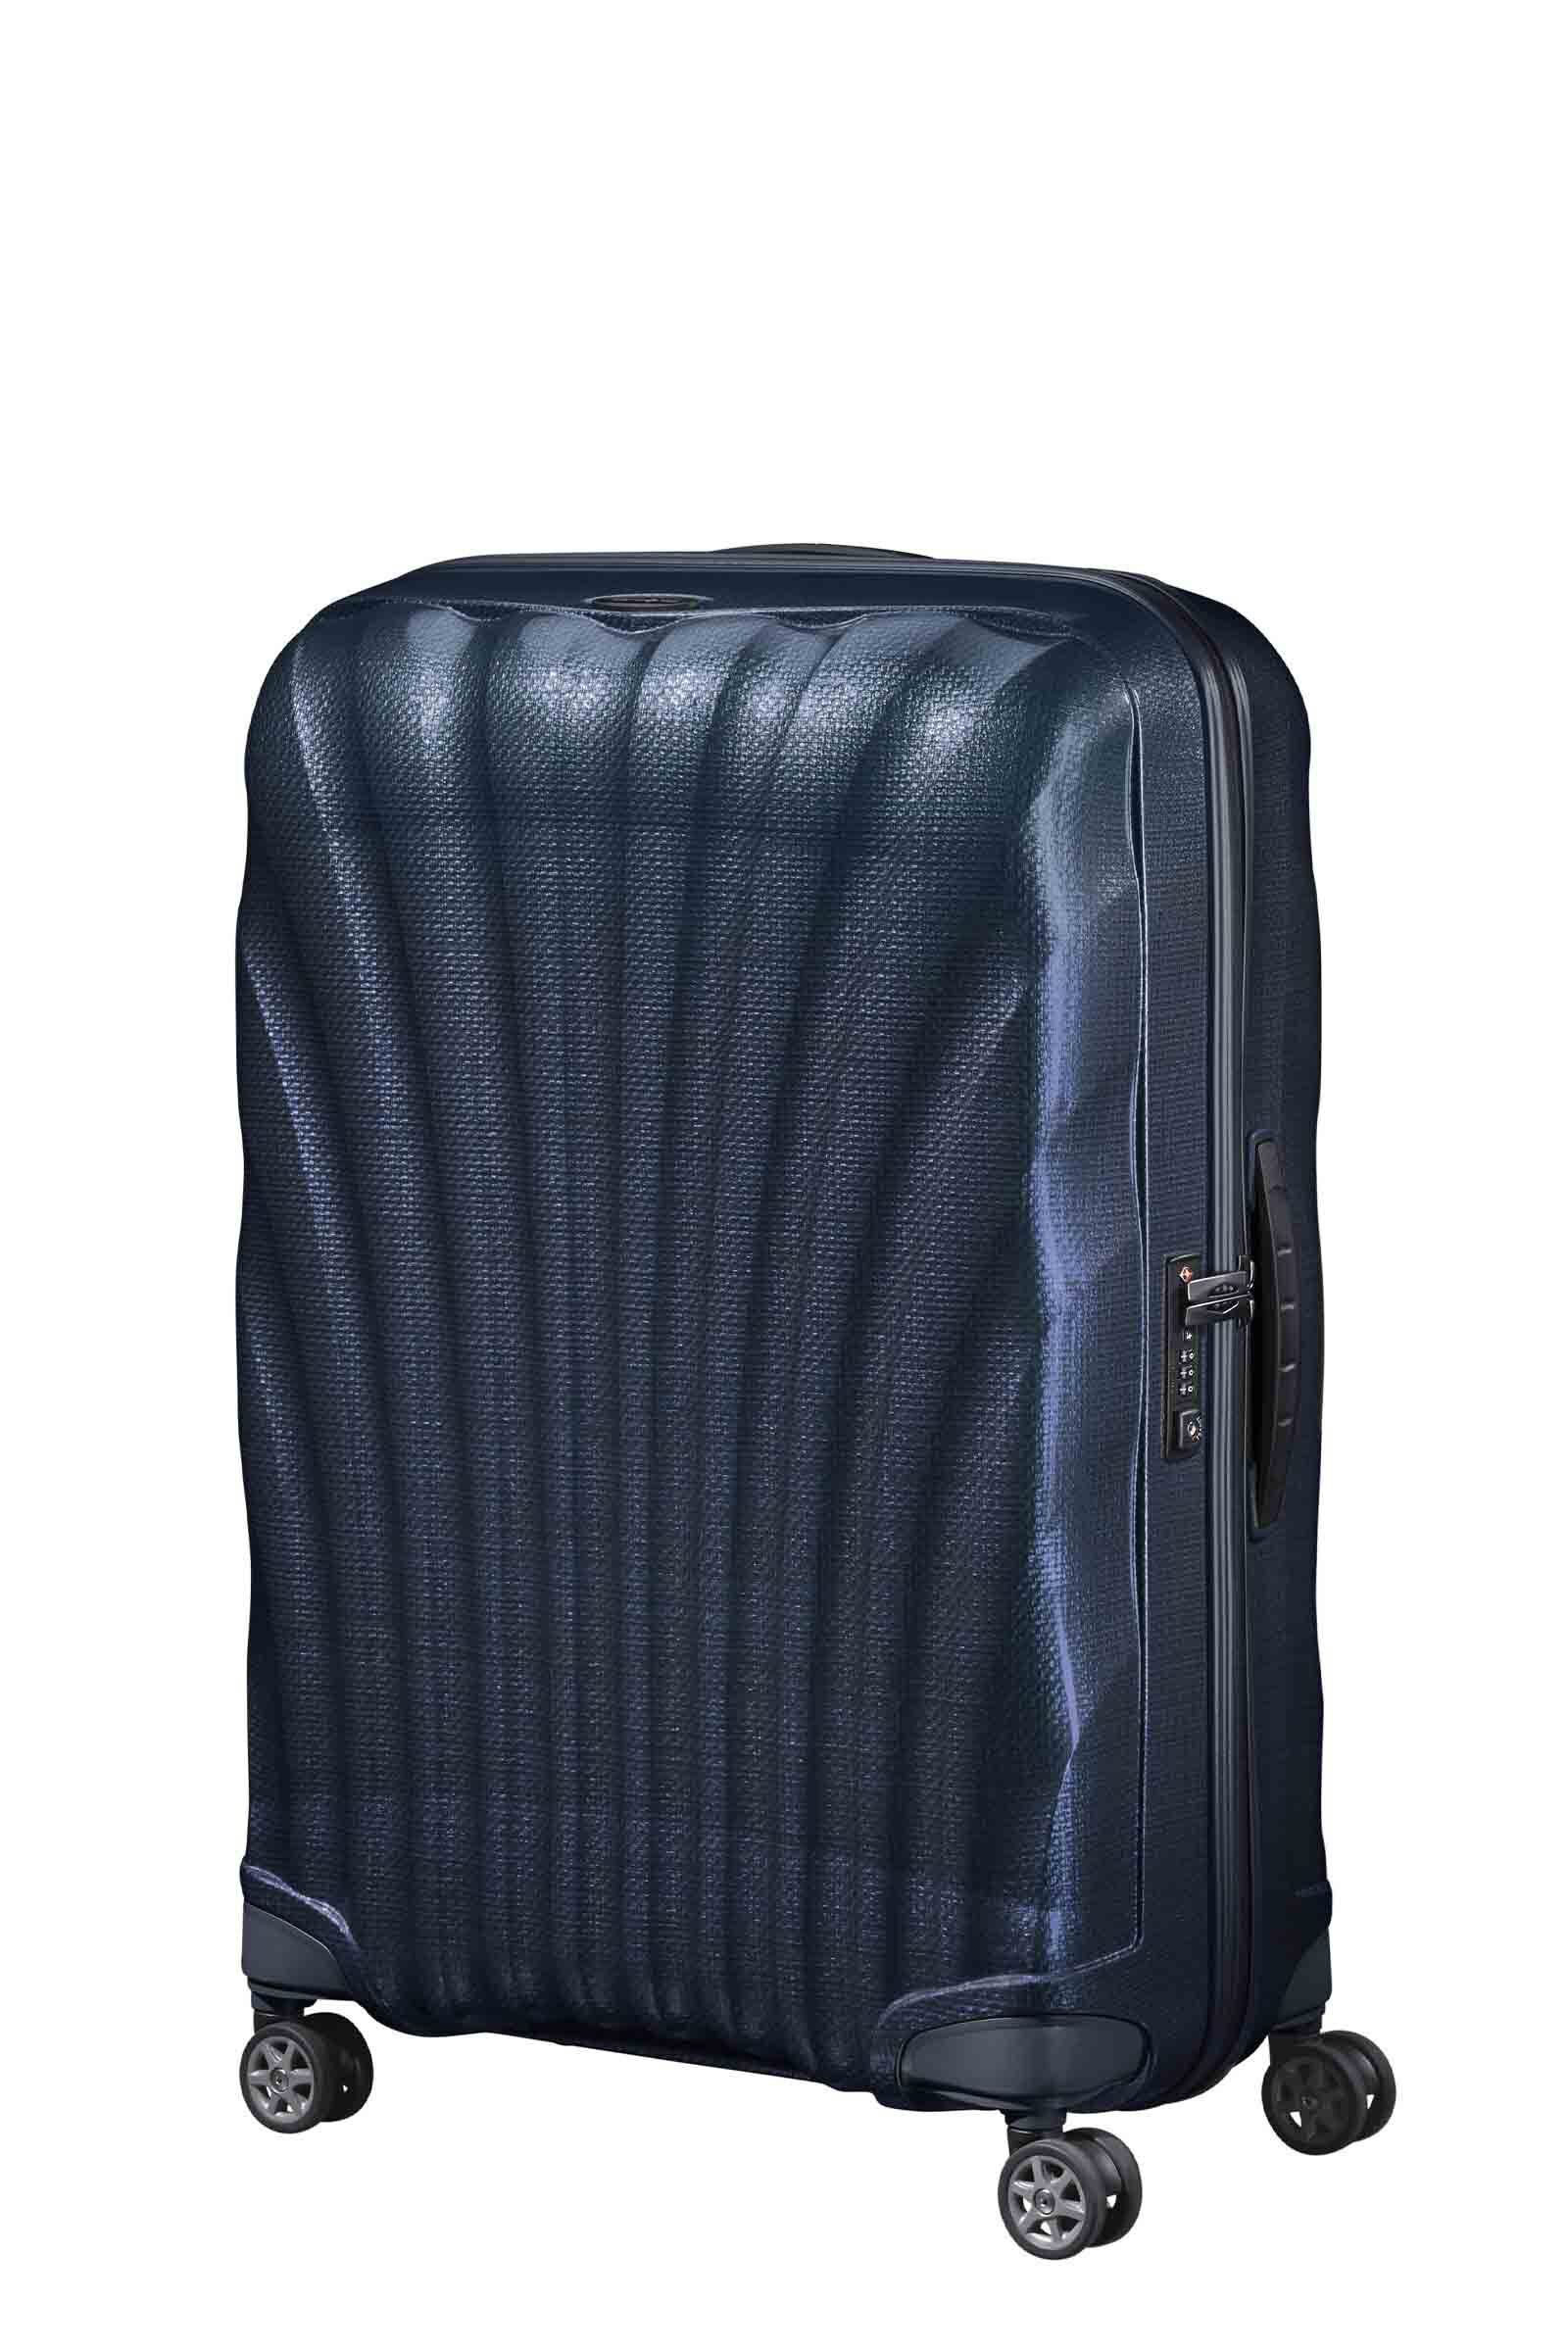 サムスナイトサムソナイト シーライトスピナー スーツケース 55 55cm